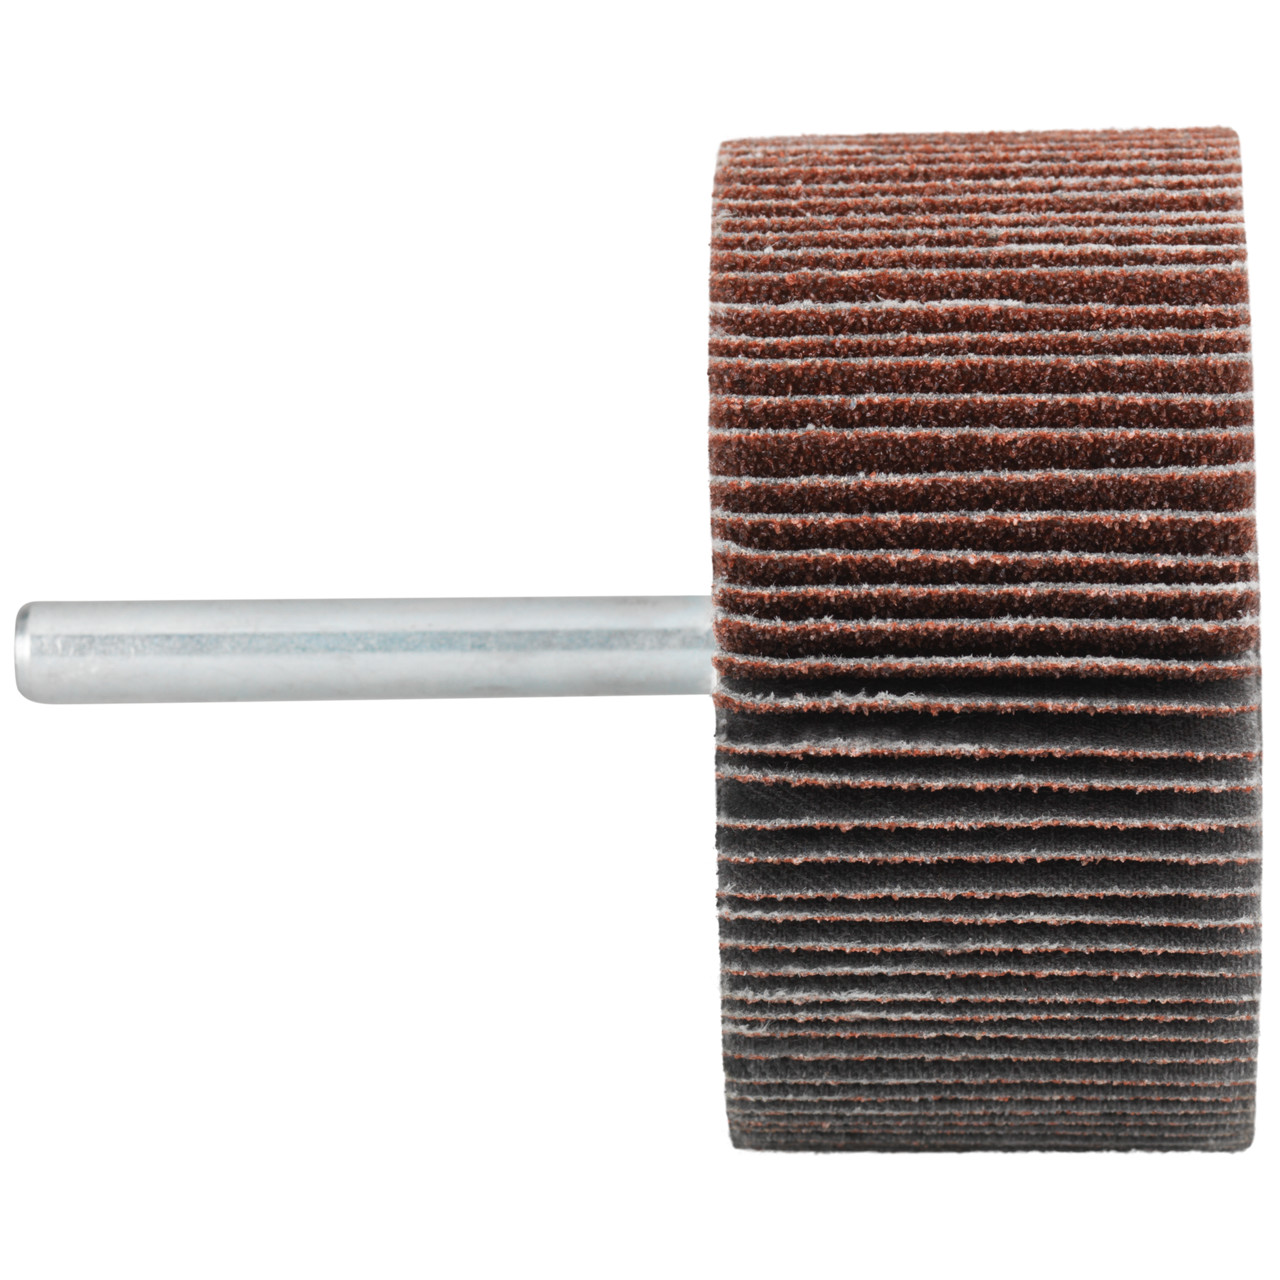 Tyrolit A-P01 C X Pennen DxD 50x20 Voor staal, roestvast staal en non-ferrometalen, P80, vorm: 52LA, Art. 816933